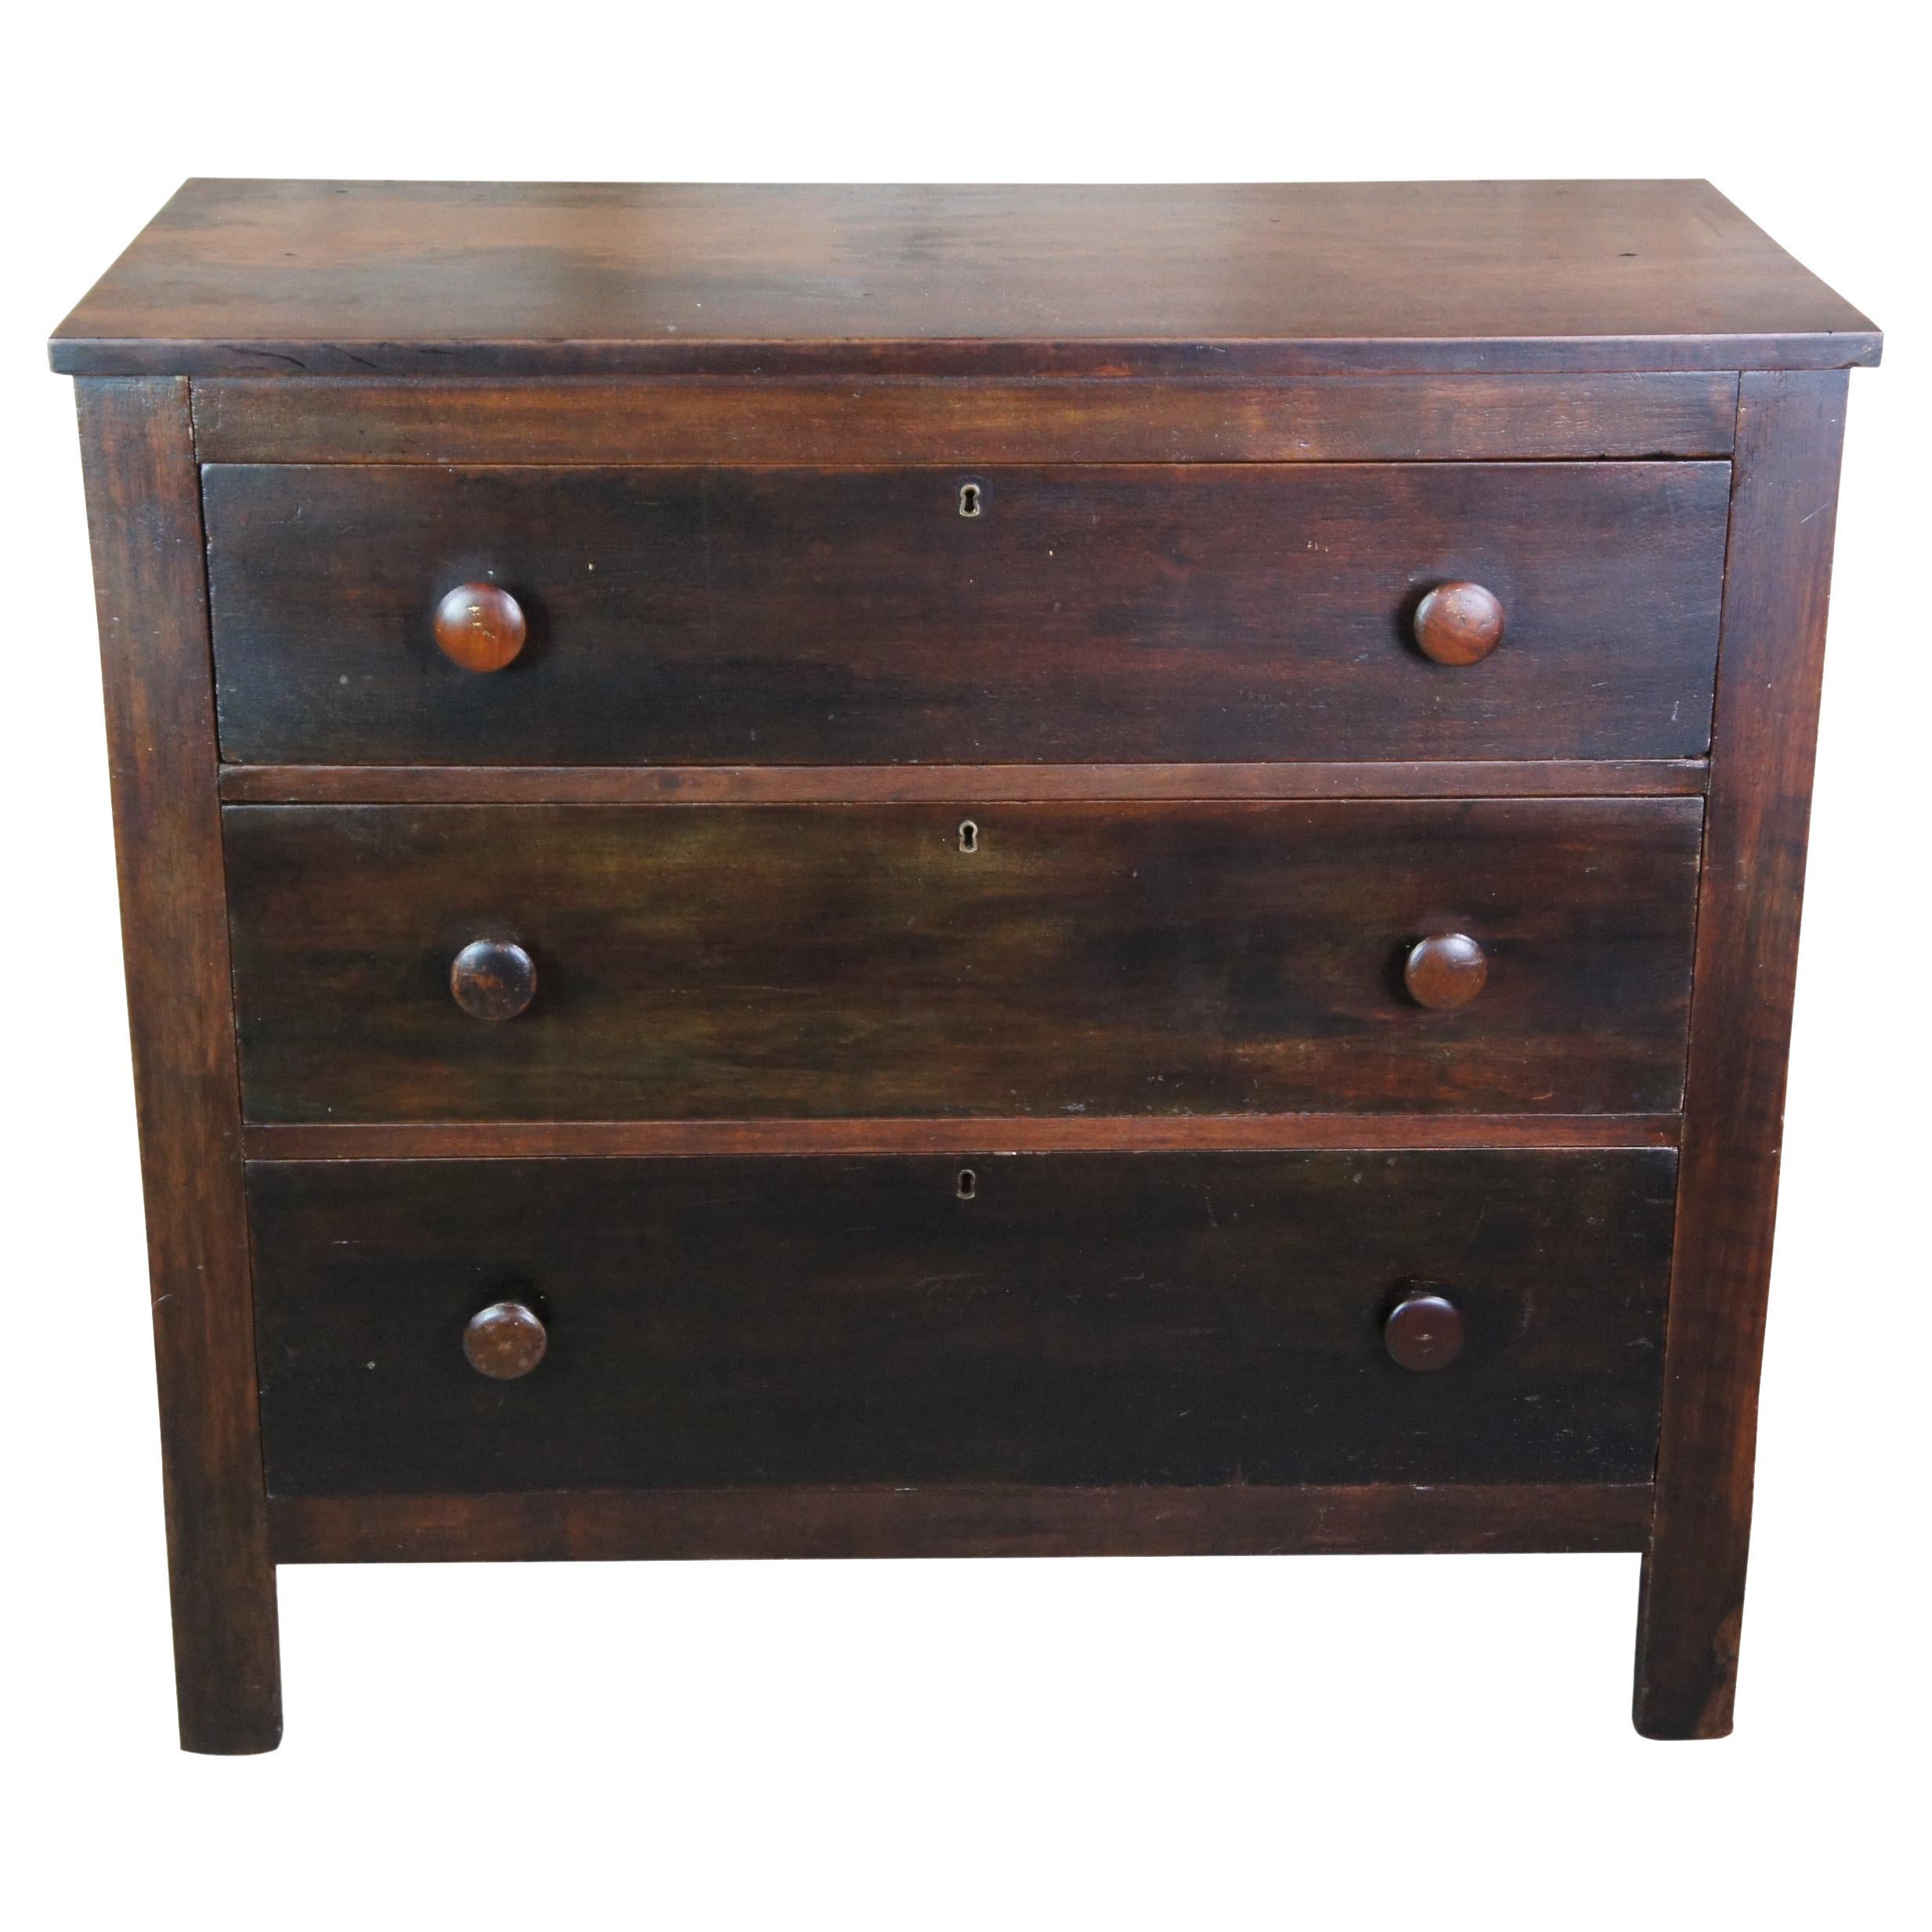 Antique 19th Century American Empire Walnut 3 Drawer Chest Dresser